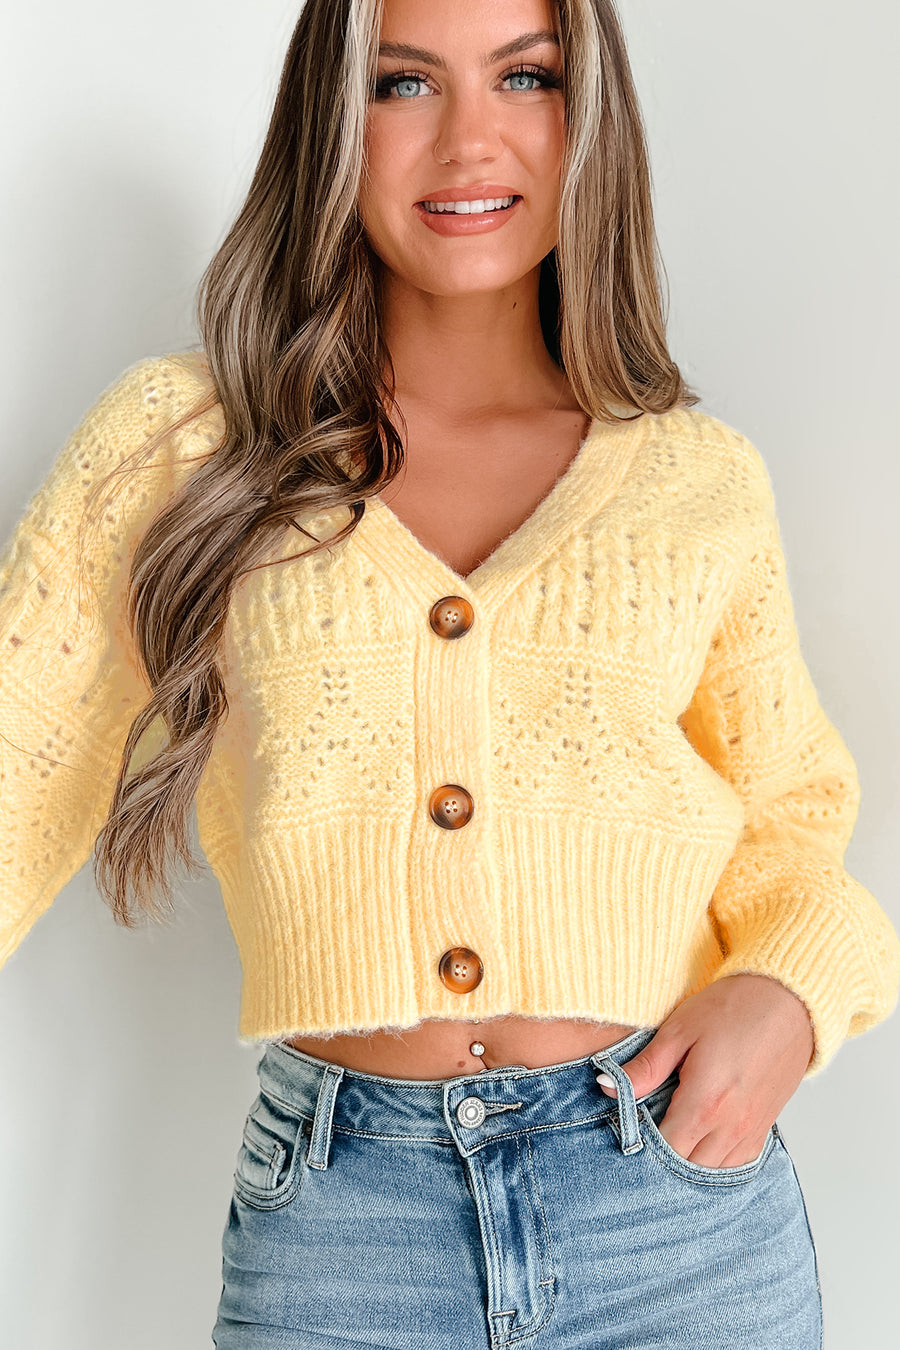 Winifred Sweater Cardigan (Light Yellow) - NanaMacs